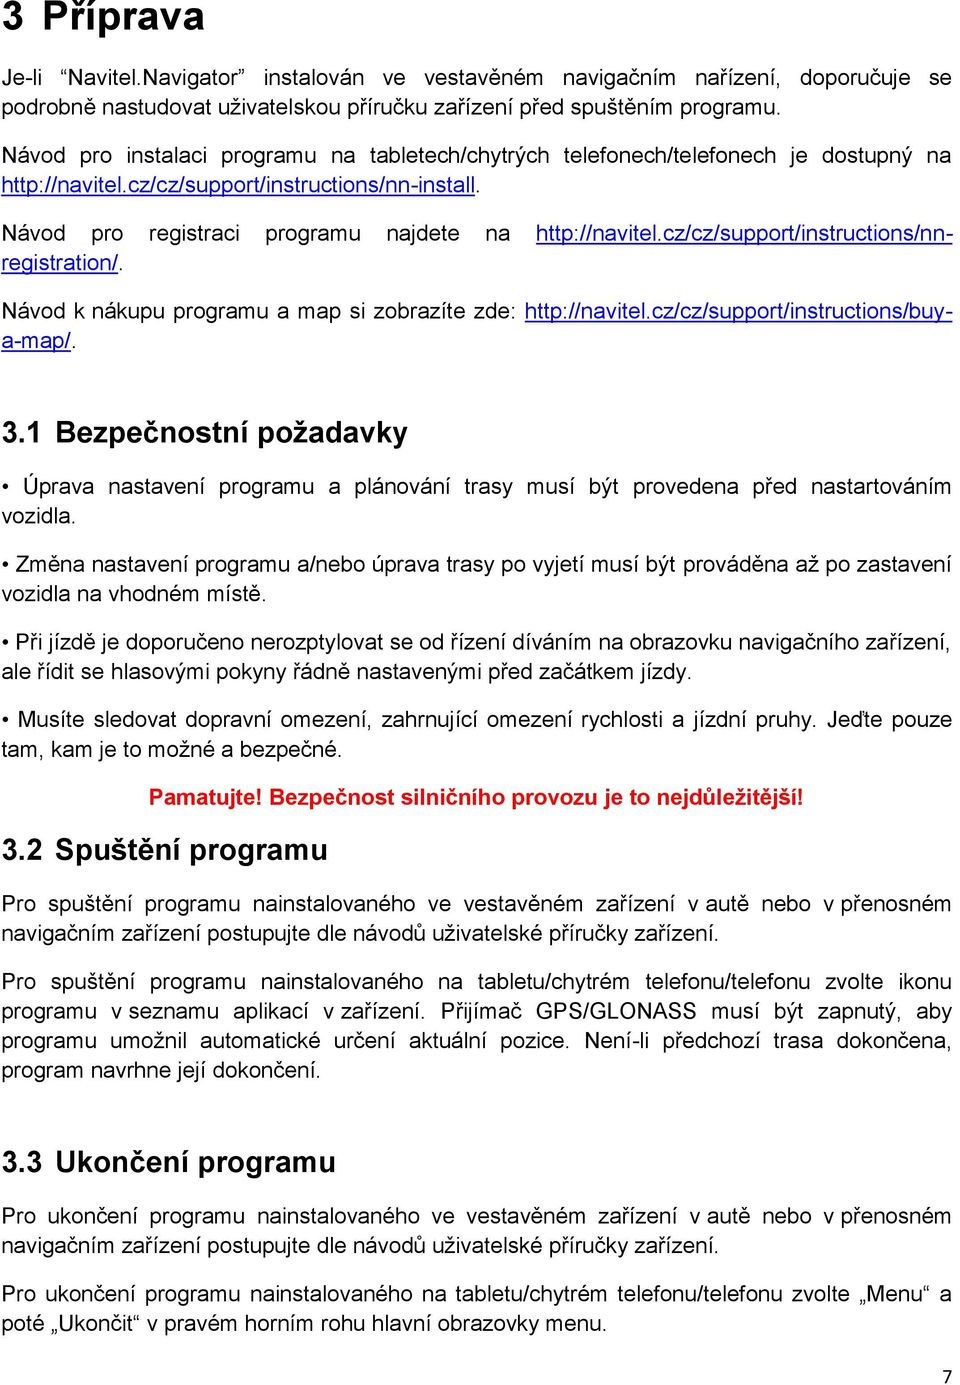 cz/cz/support/instructions/nnregistration/. Návod k nákupu programu a map si zobrazíte zde: http://navitel.cz/cz/support/instructions/buya-map/. 3.